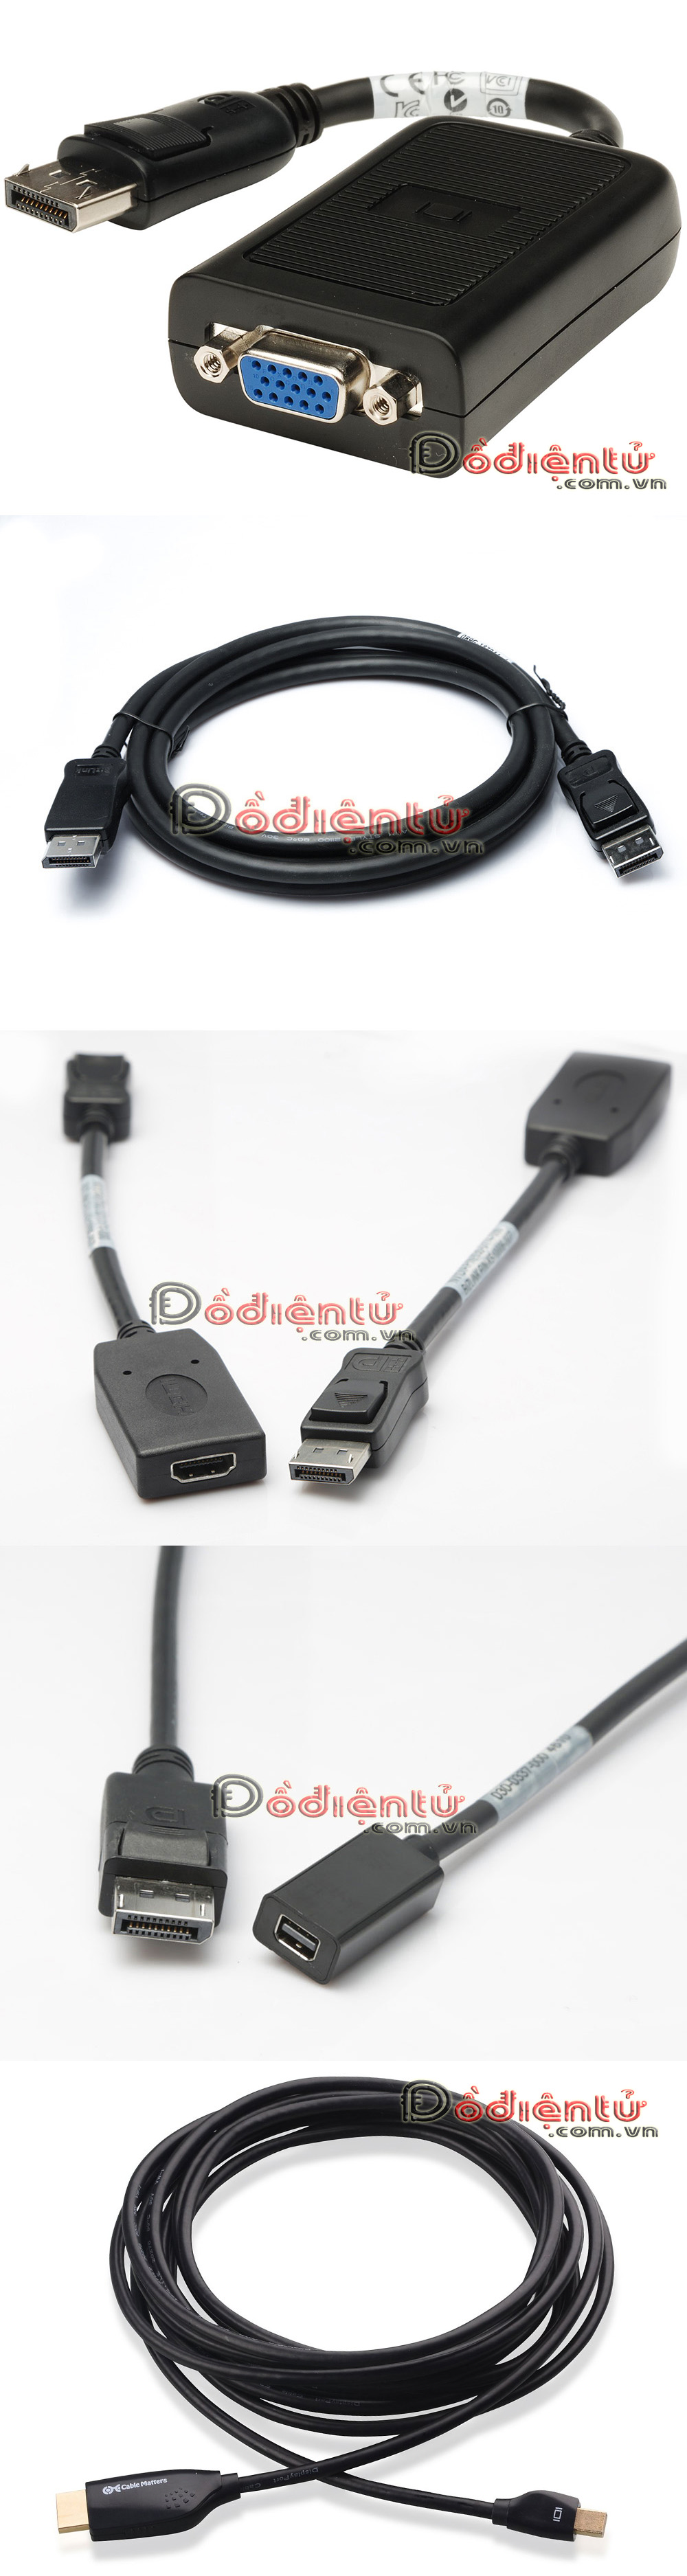 dodientu.com.vn chuyên dây cáp HDMI giá rẻ, Coaxial, Optical, DVI  .Giá tốt nhất - 3